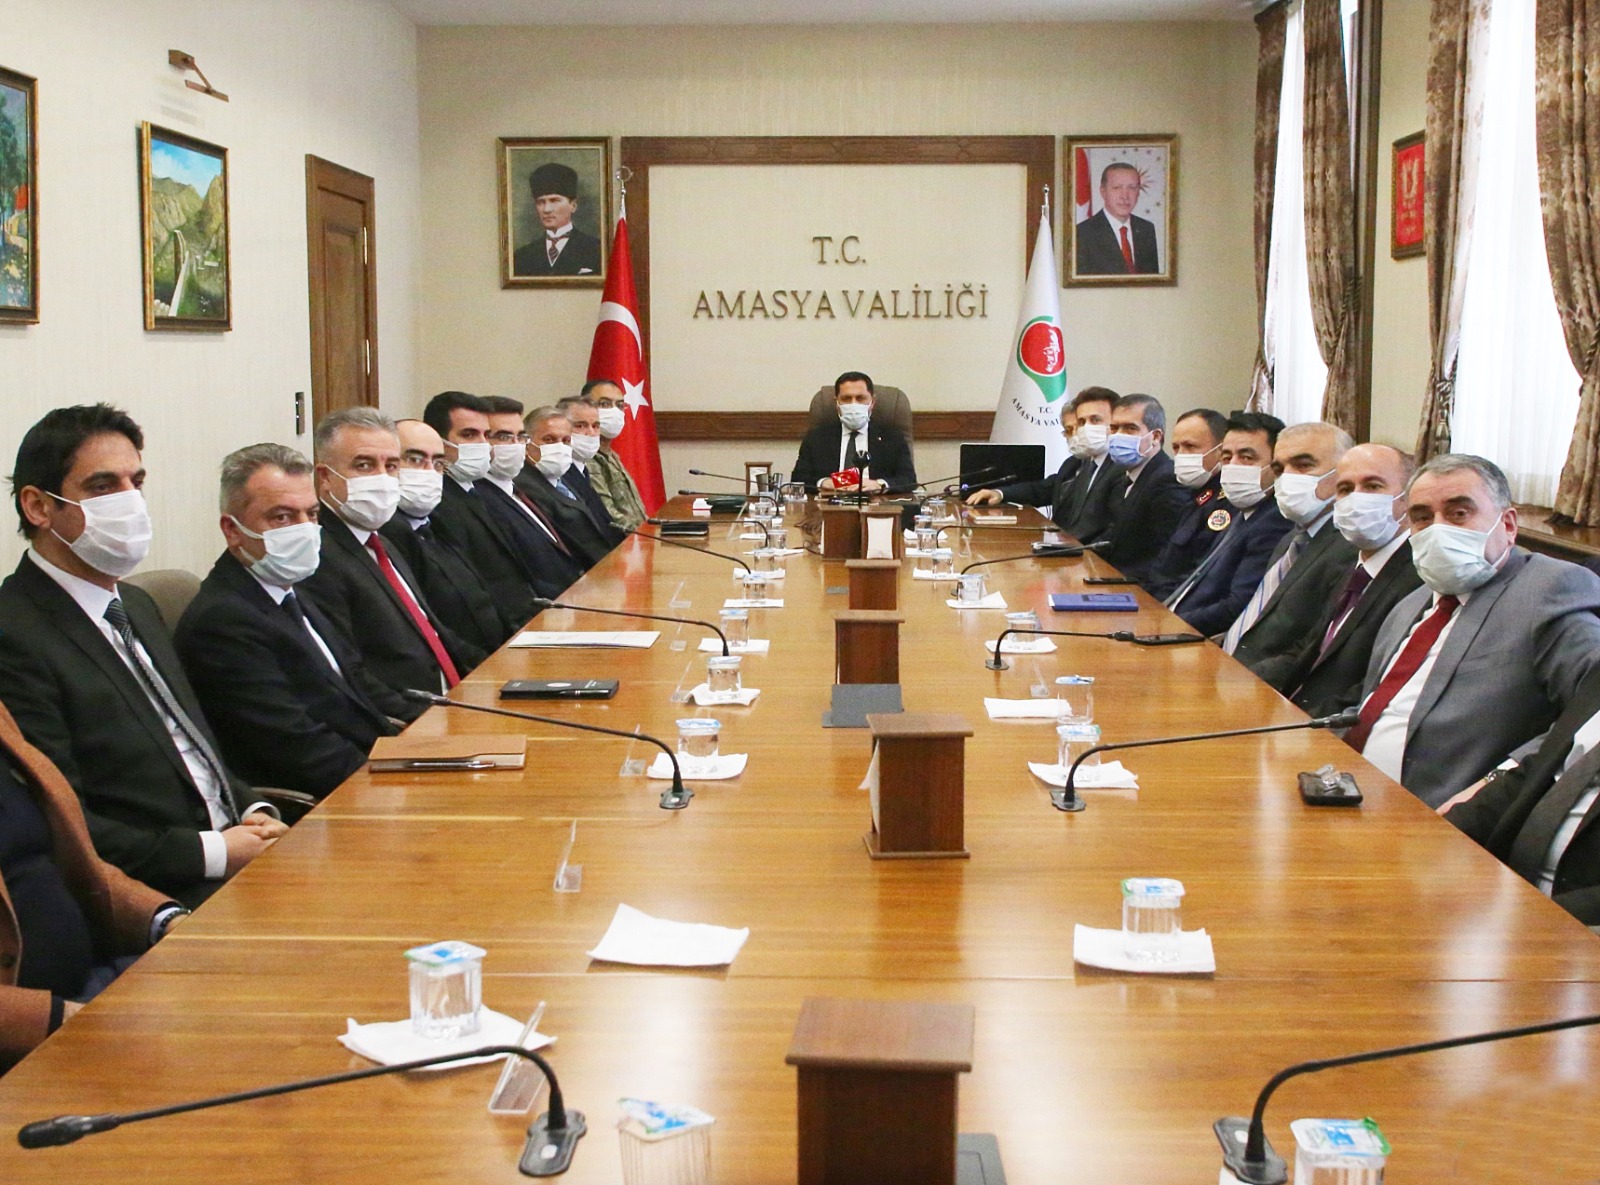 İl Pandemi Kurulu Toplantısı Amasya Valisi Mustafa MASATLI Başkanlığında Gerçekleştirildi